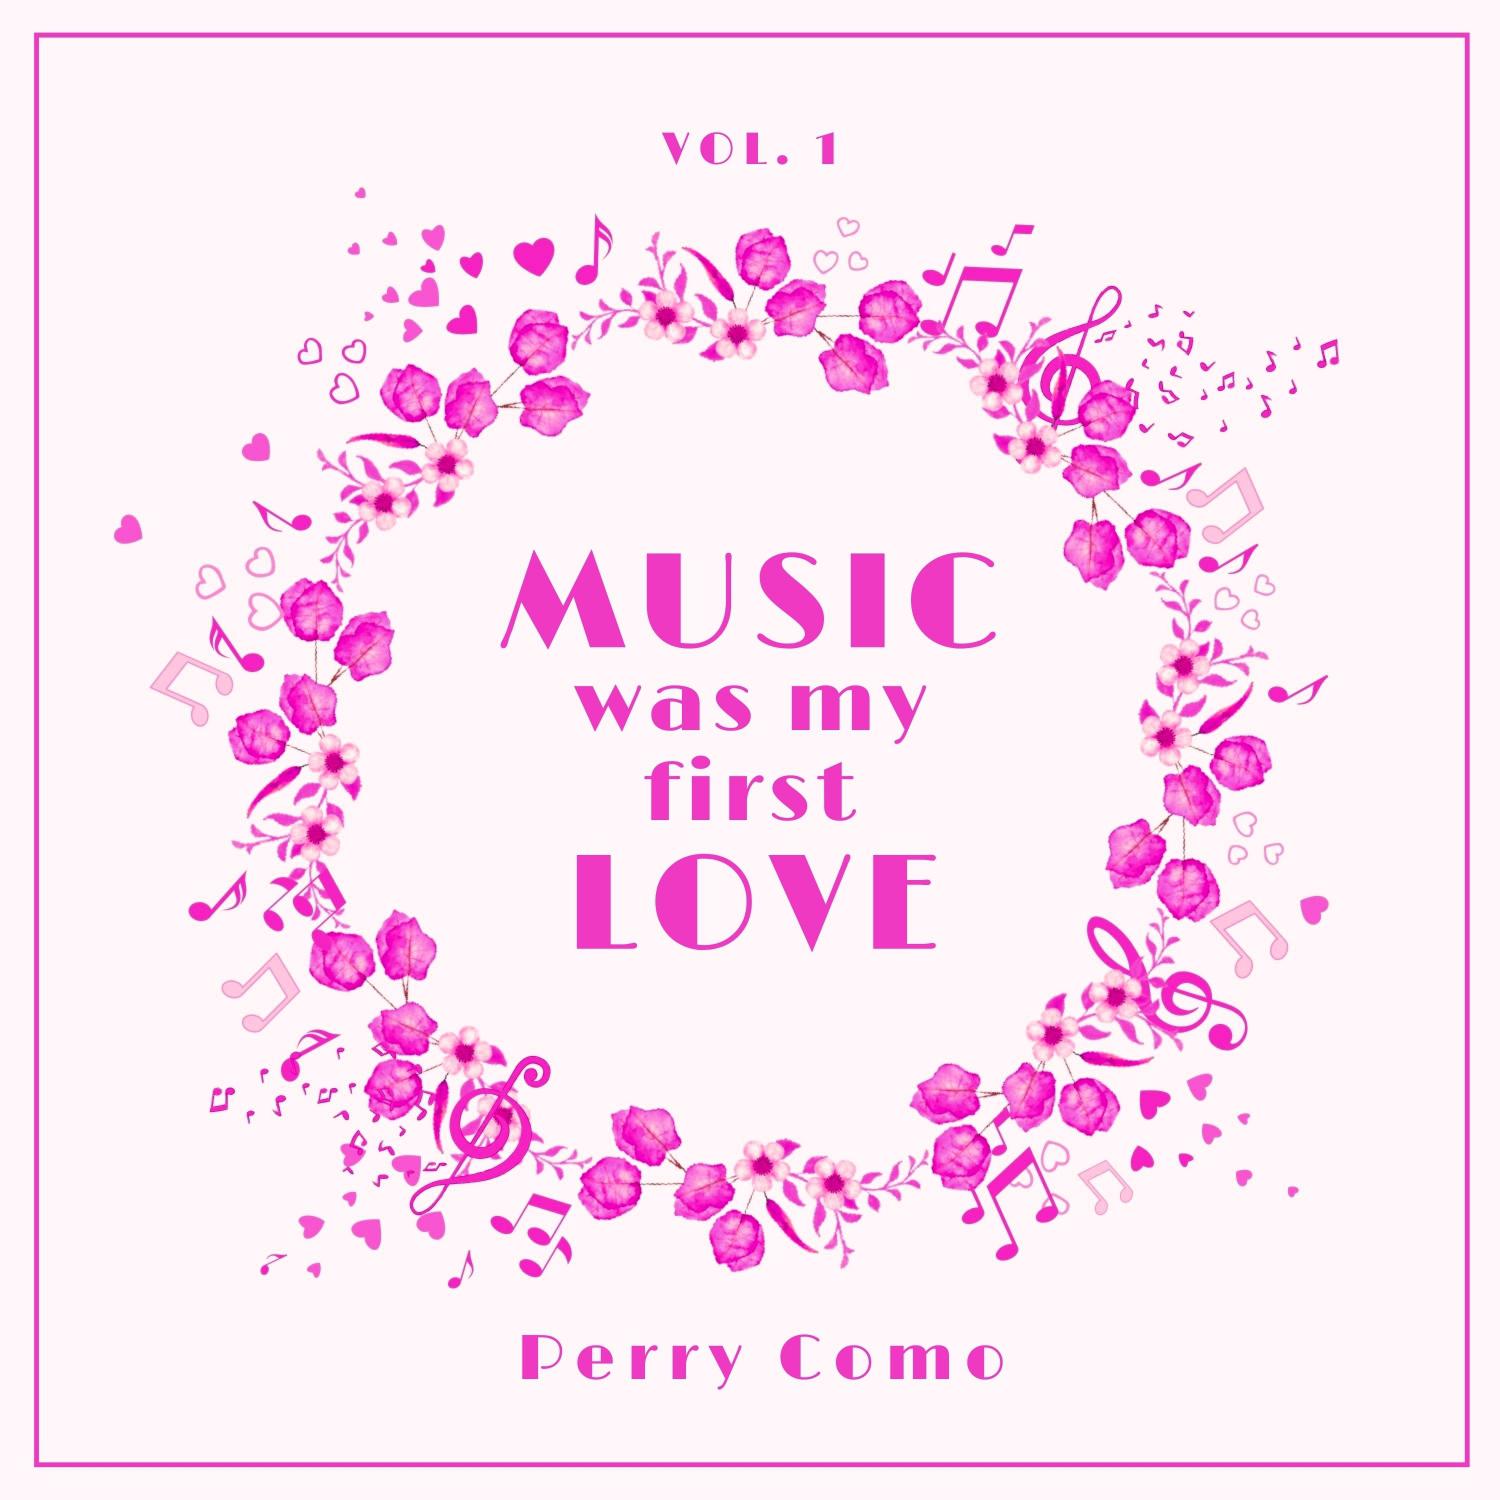 Perry Como - You Make Me Feel so Young (Original Mix)